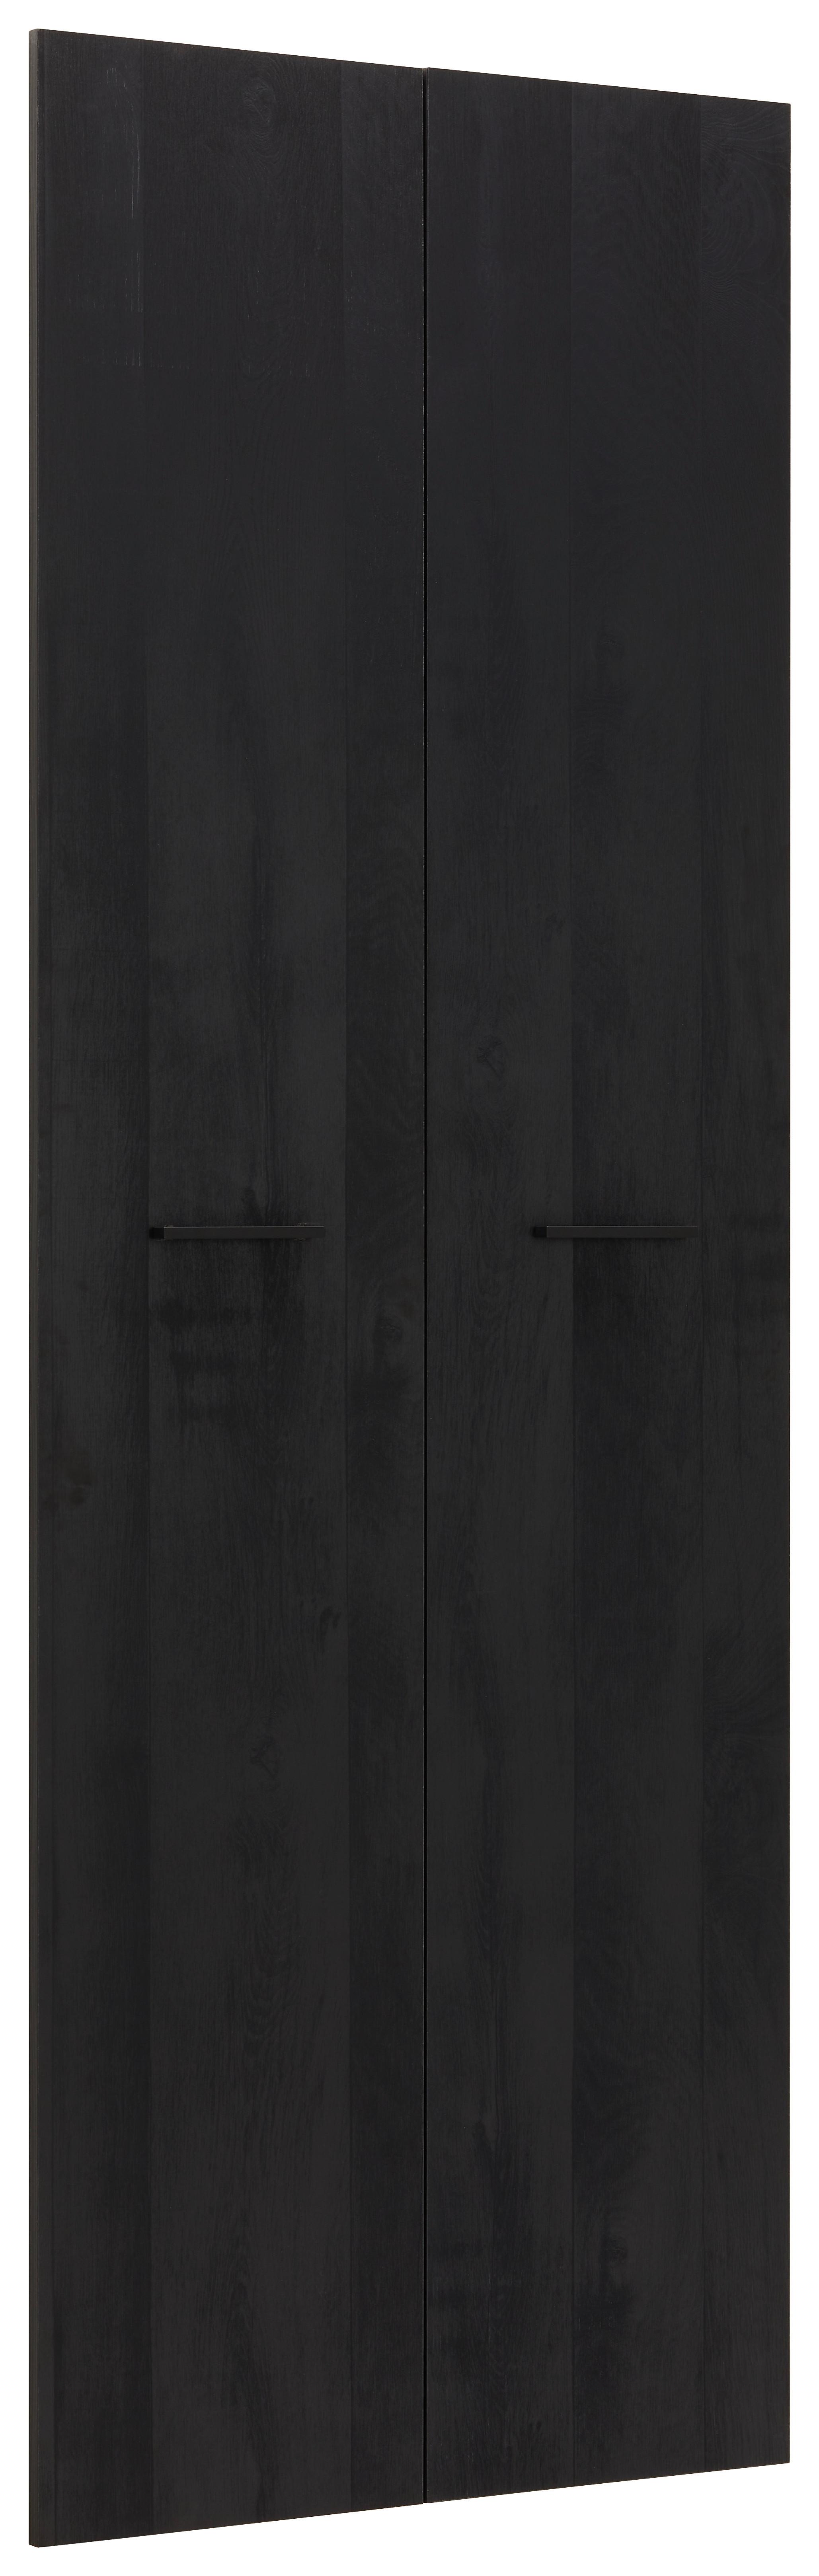 Türenset in Schwarz ca. 75x210x2cm - Schwarz, MODERN, Holzwerkstoff/Metall (75/210/2cm) - Modern Living